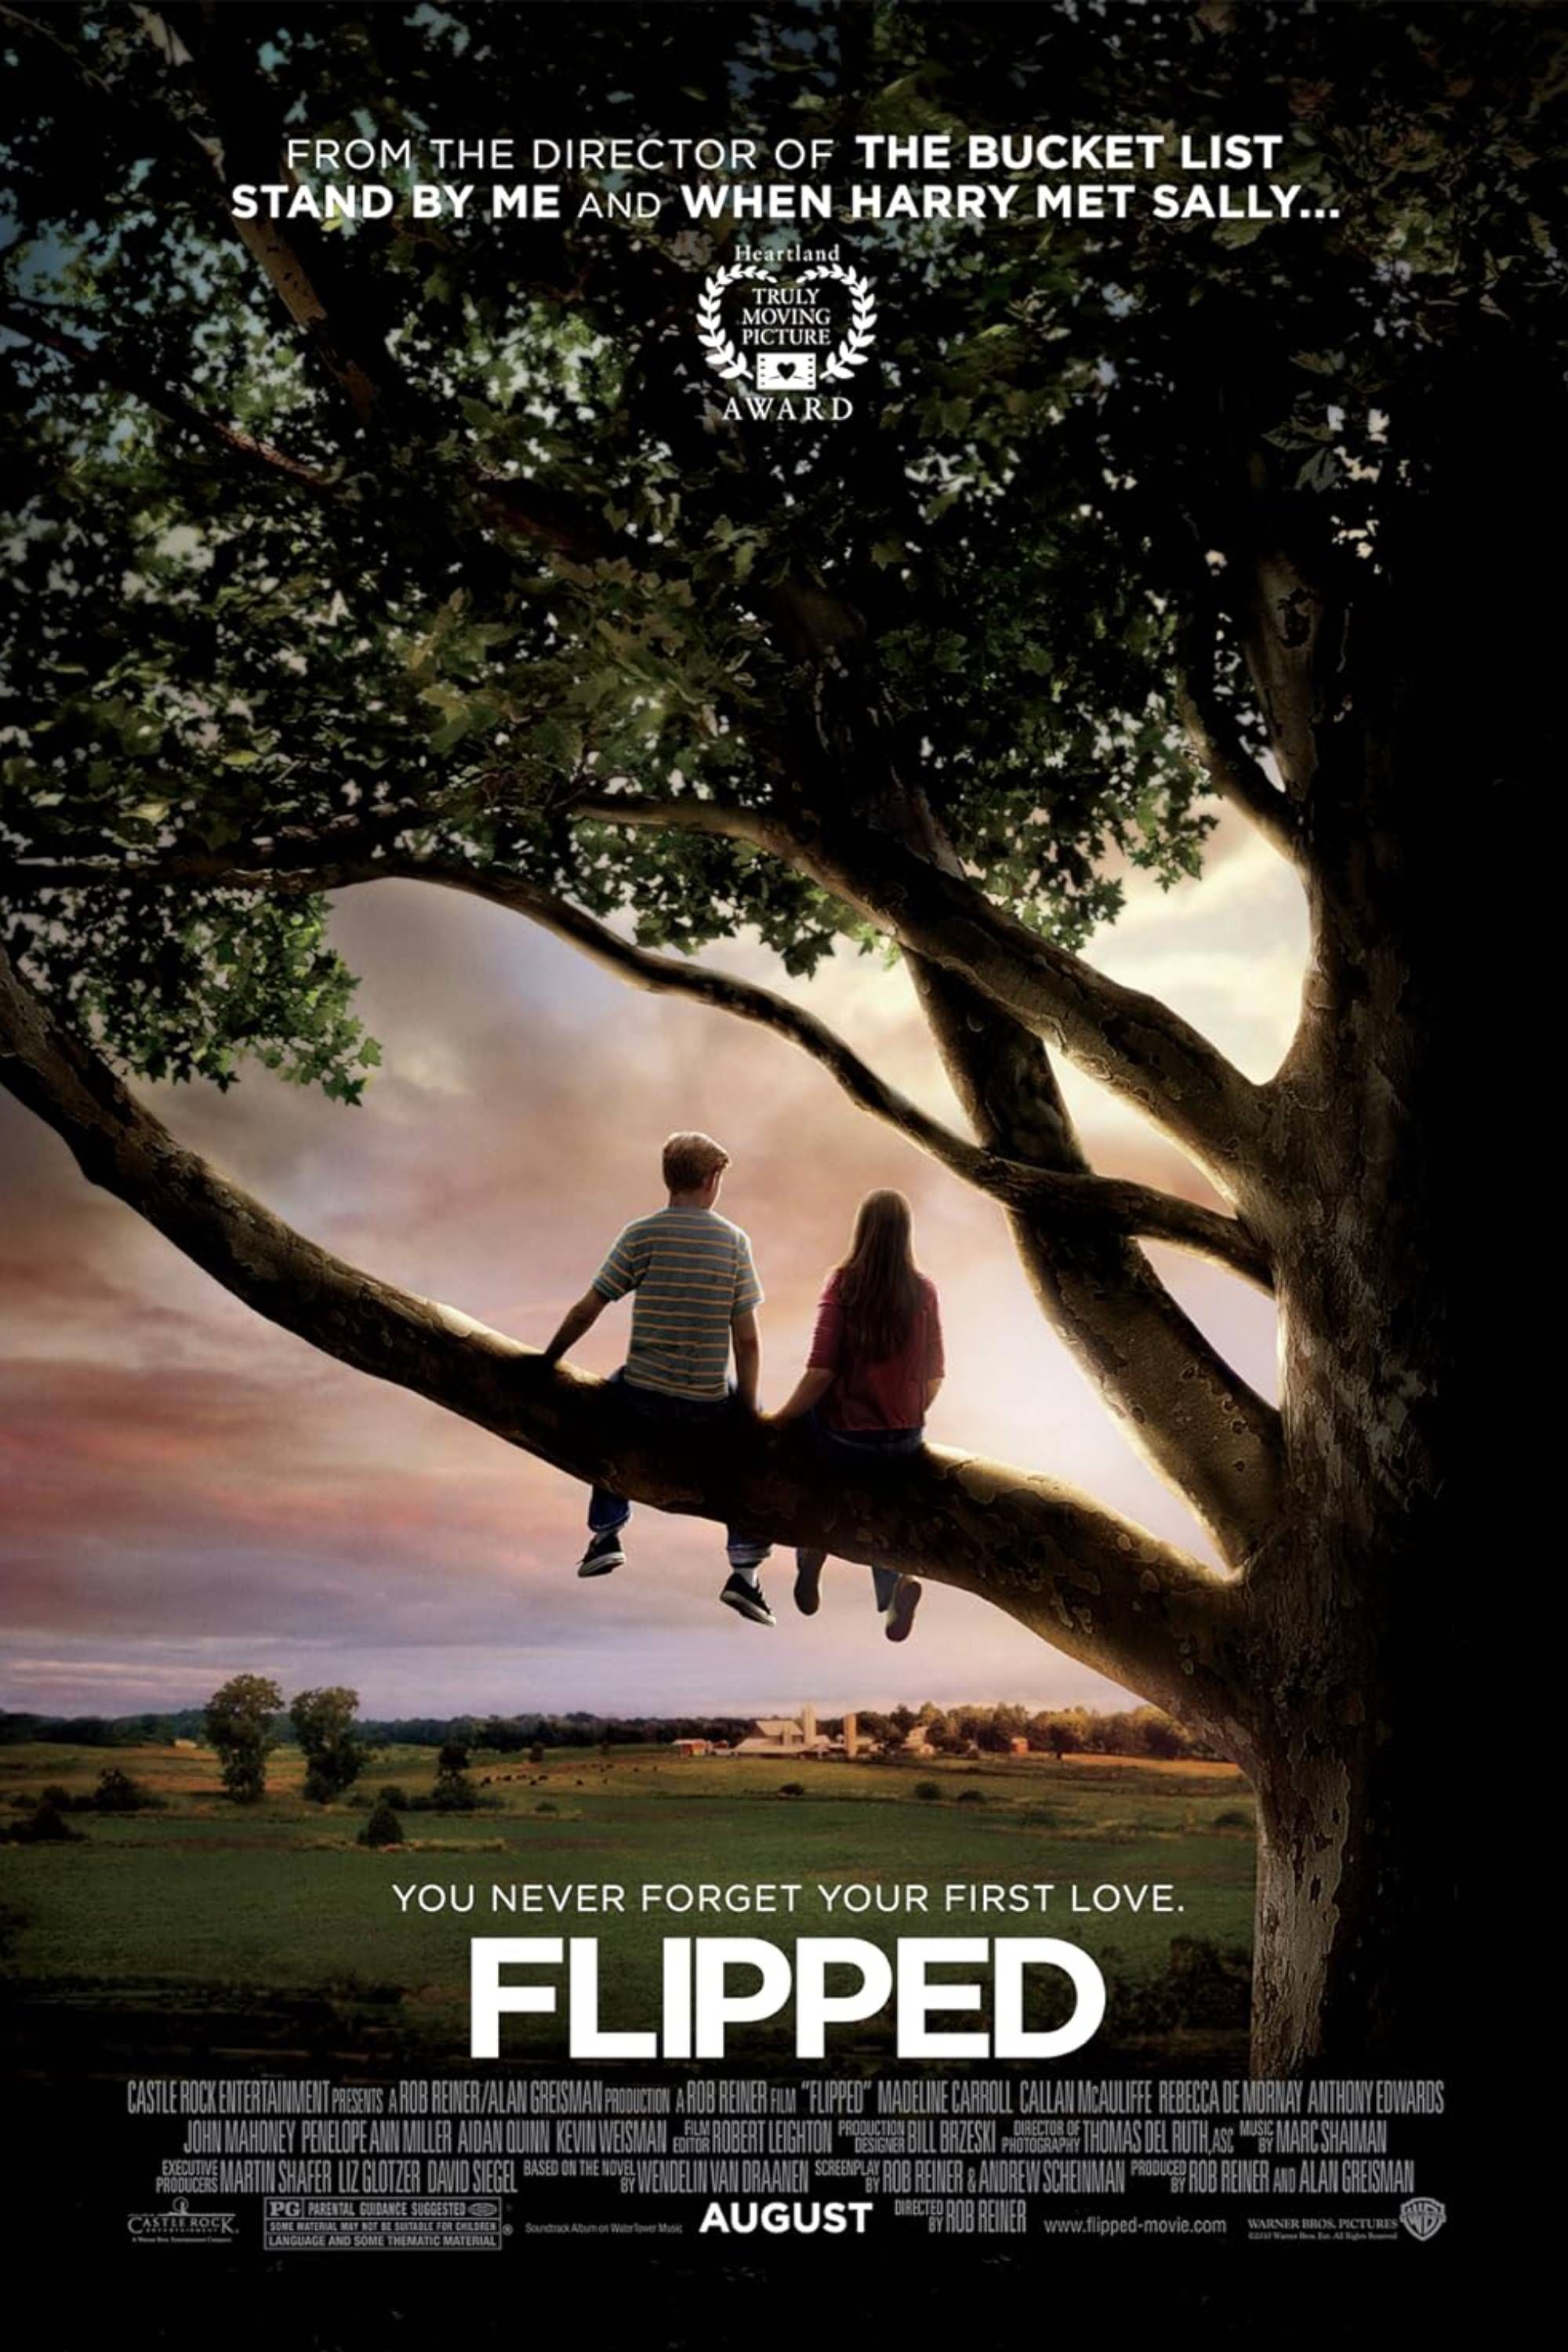 Flipped (2010) - Pôster - Madeline Carroll e Callan Mcauliffe em uma árvore